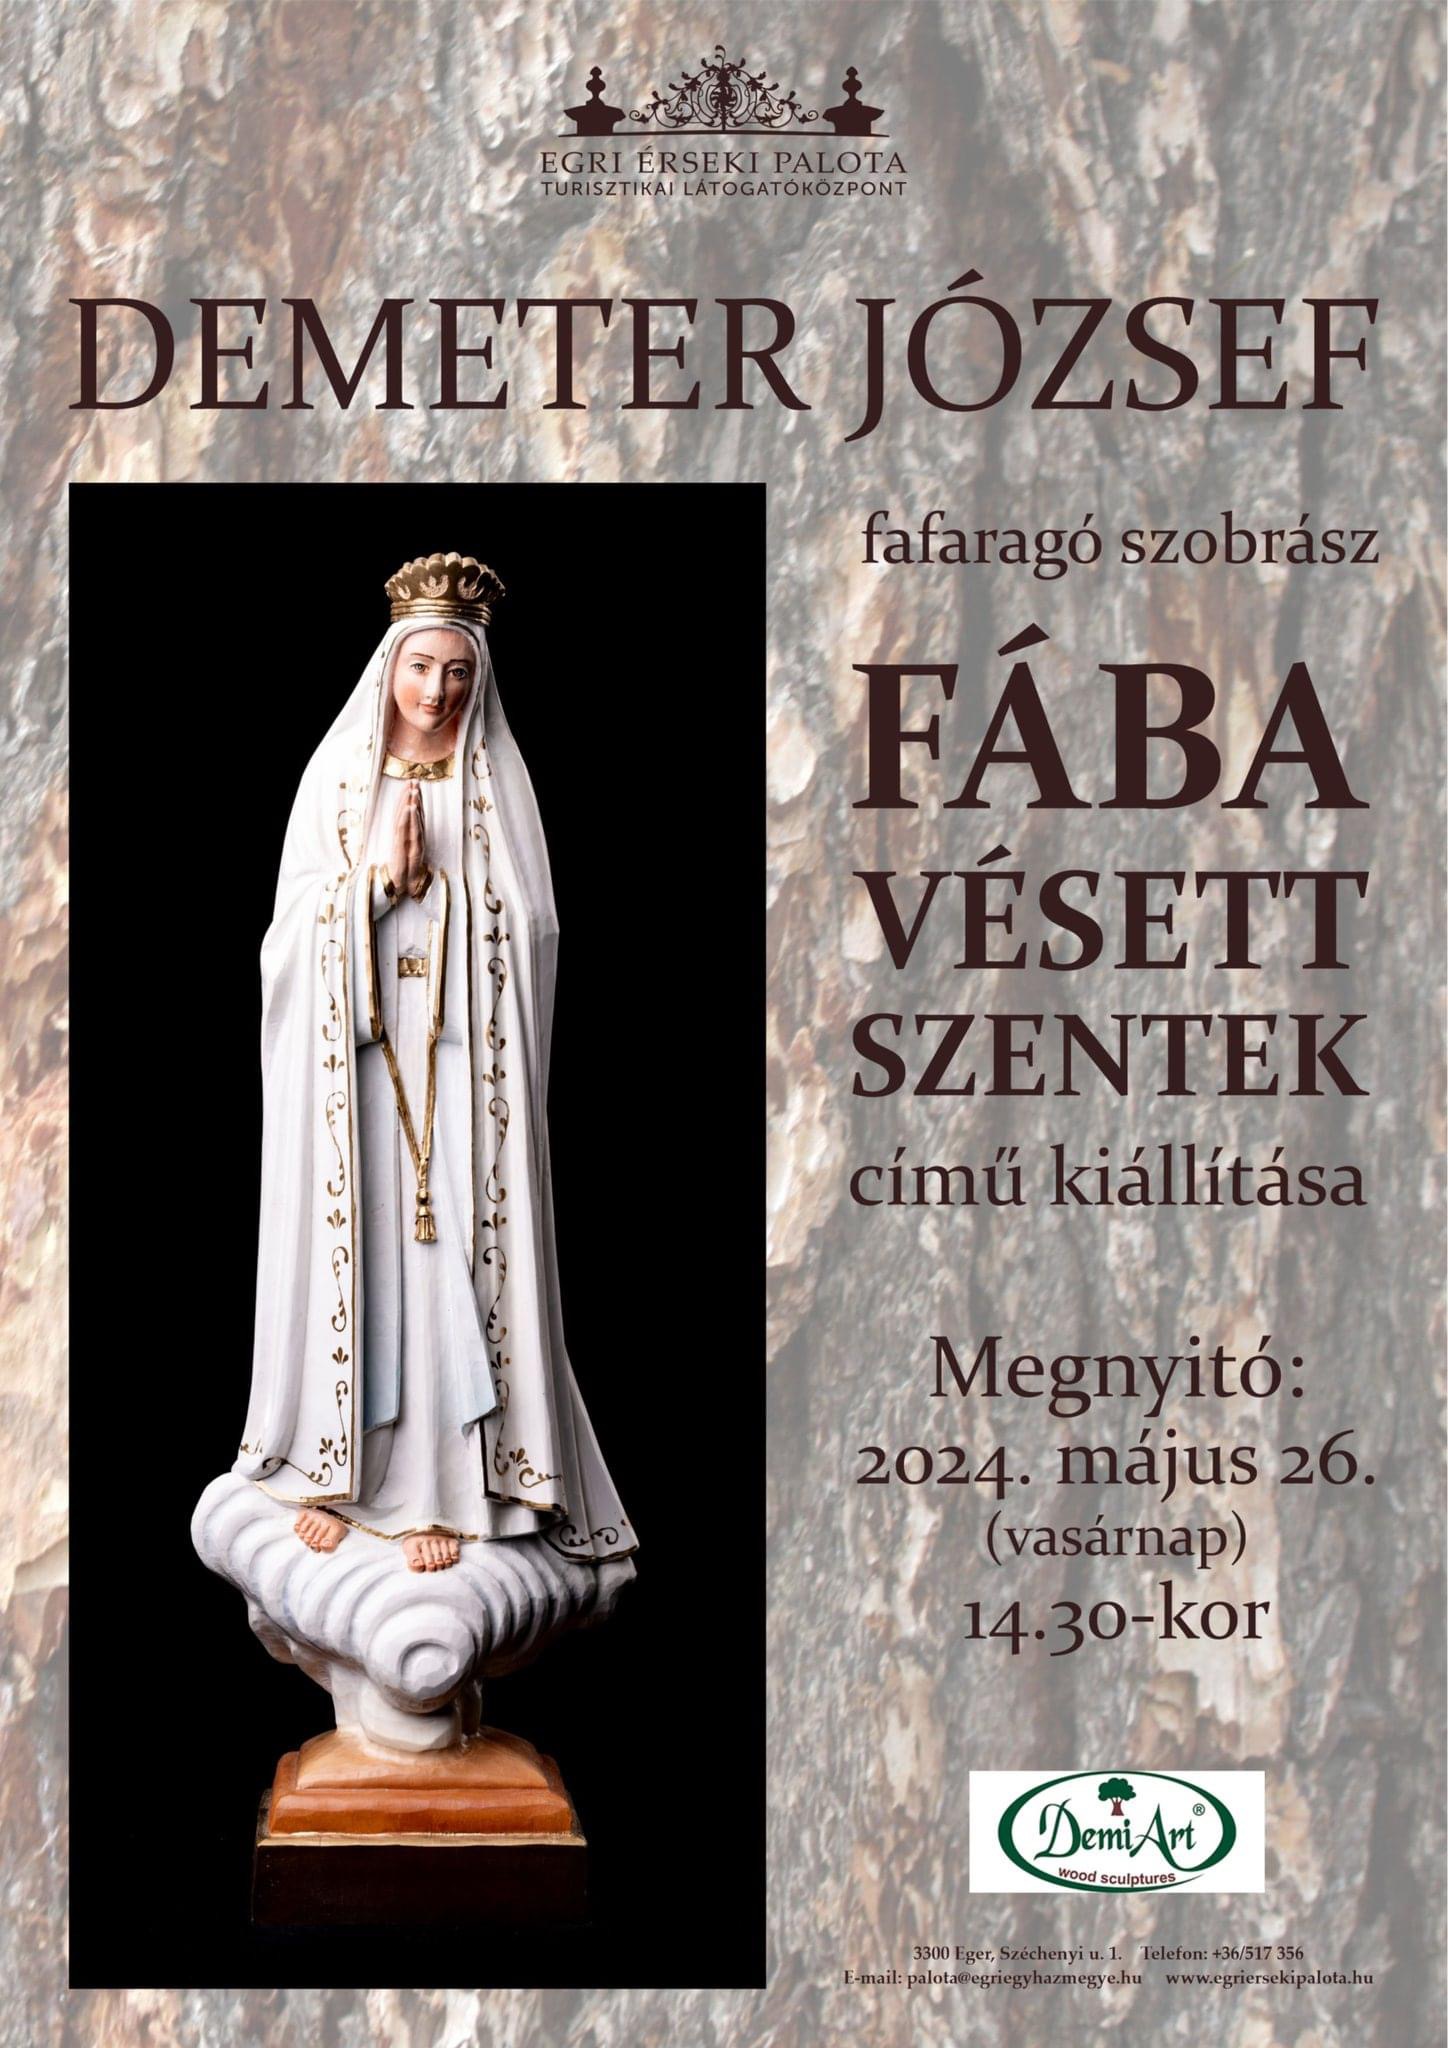 Demeter József plakát